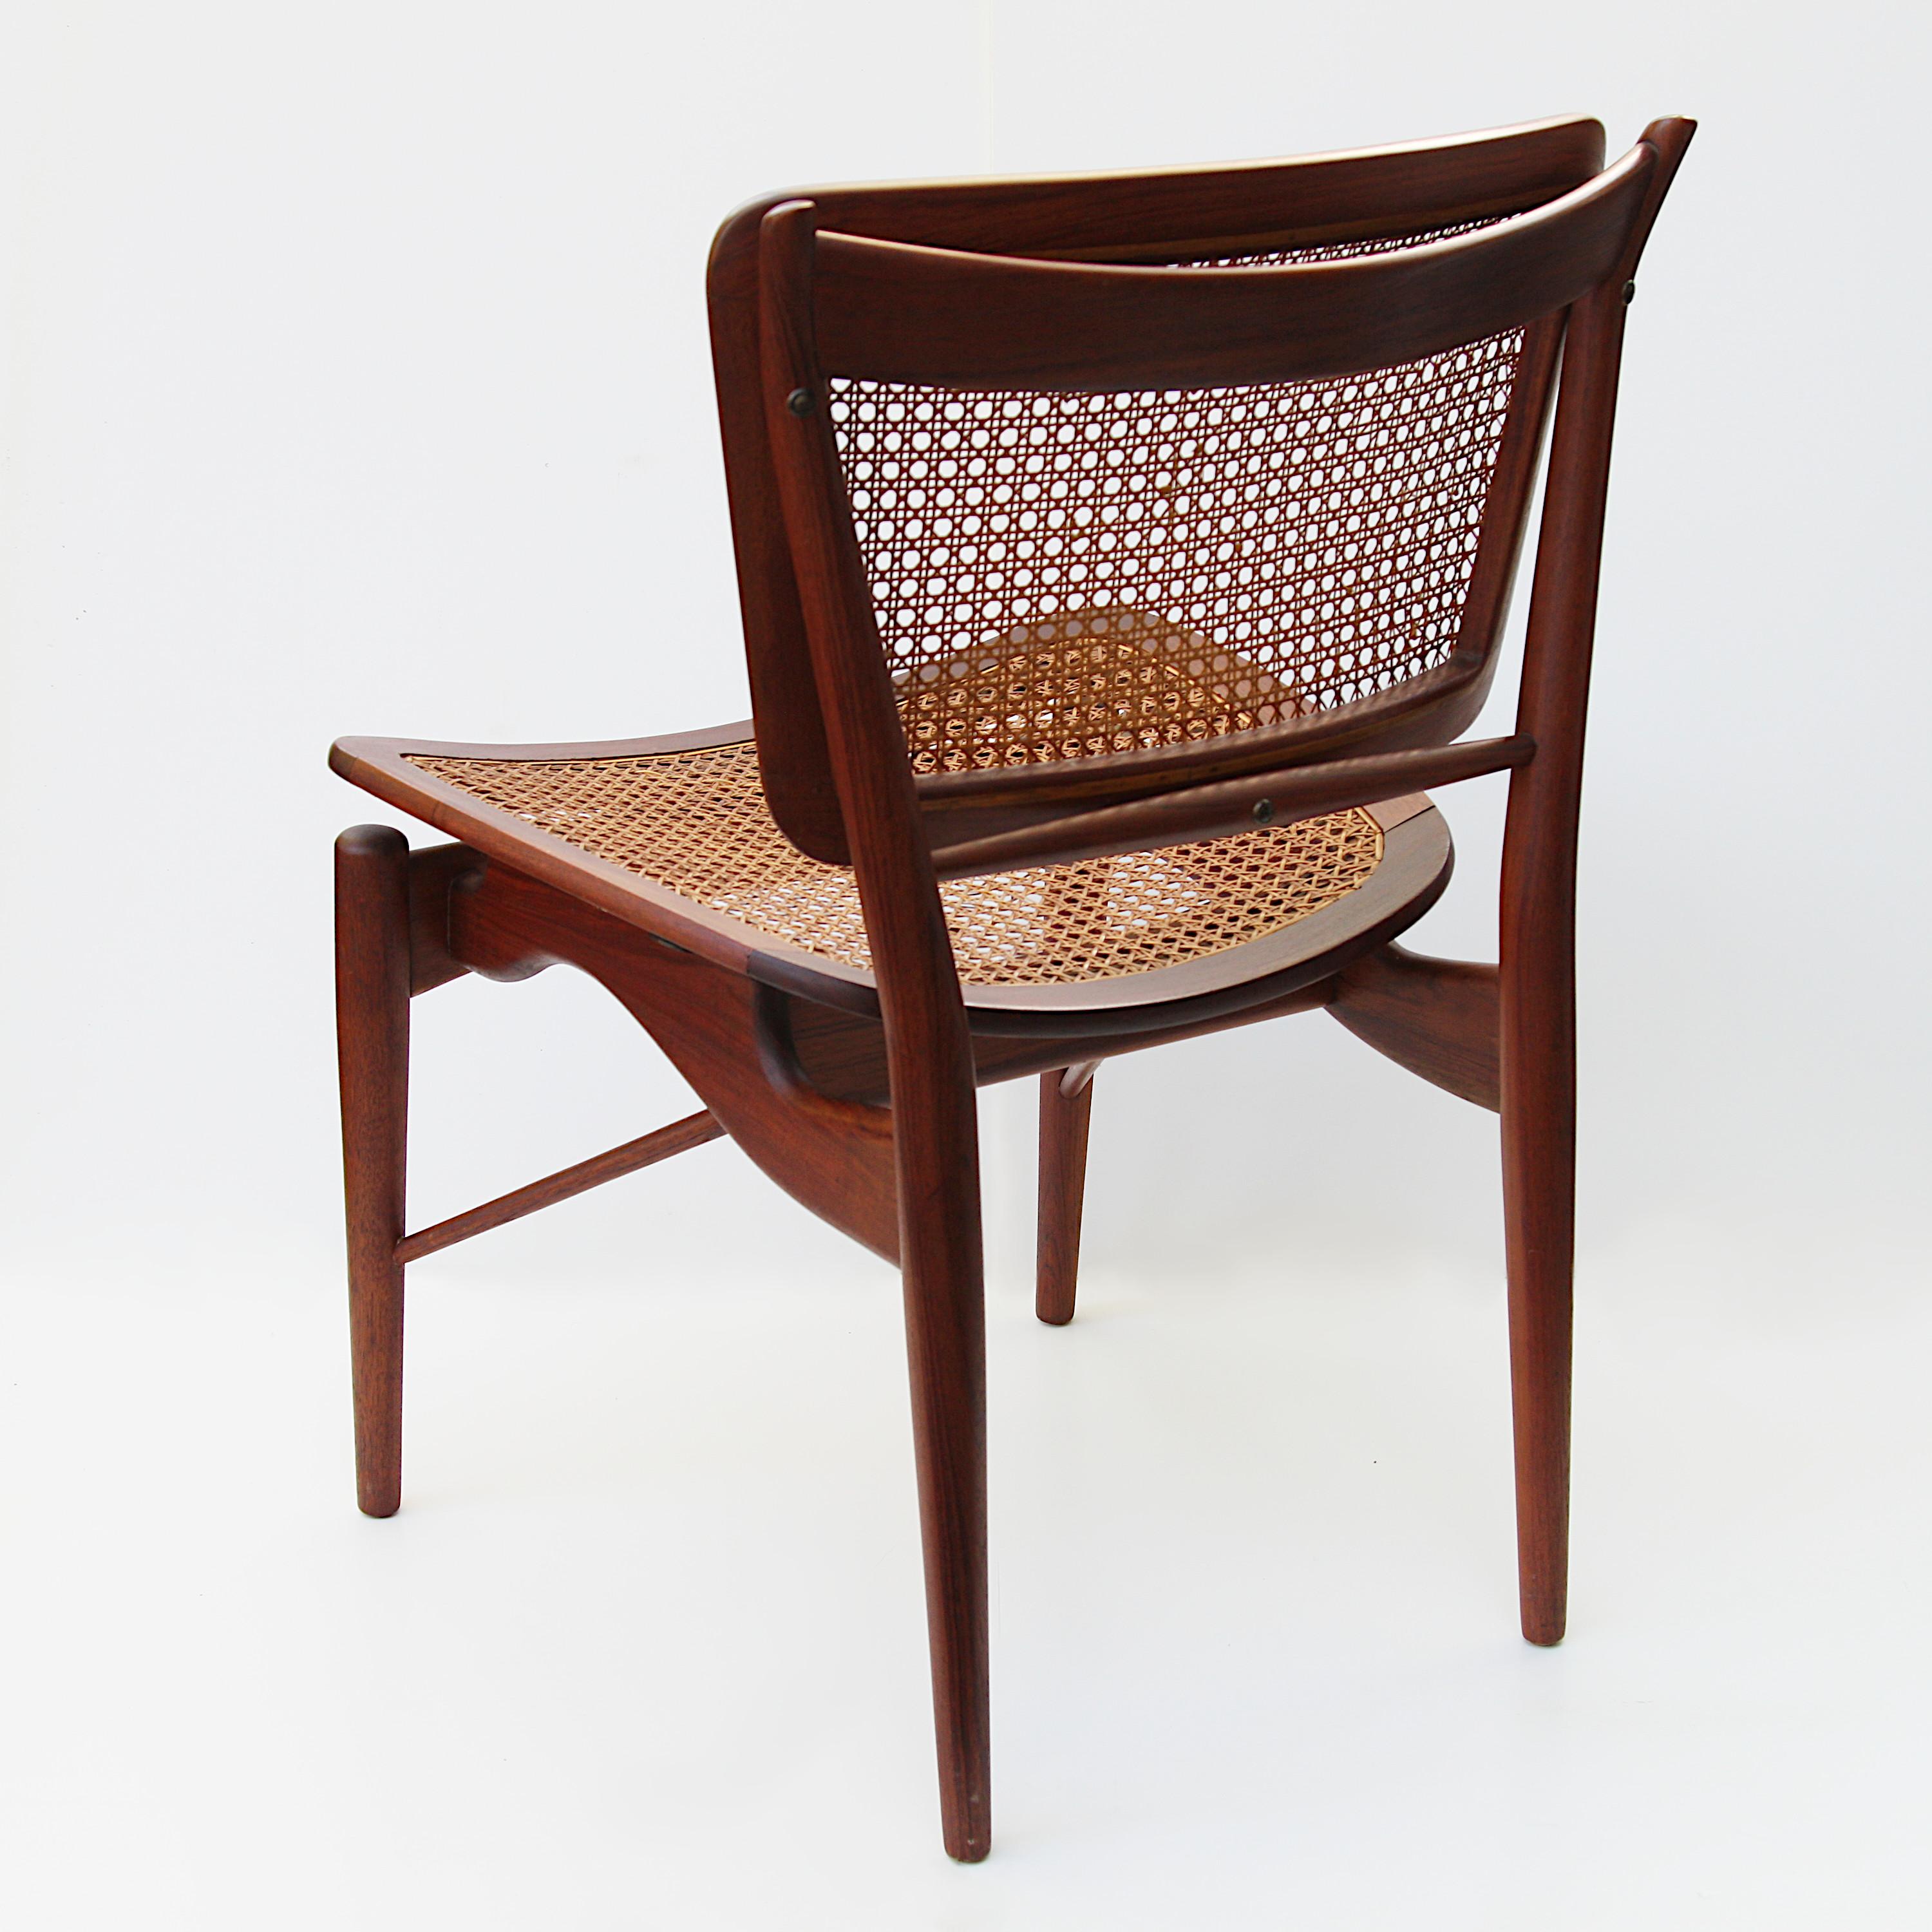 Indian Original Finn Juhl Model NV 51/403 Teak & Cane Dining Side Chair by Baker